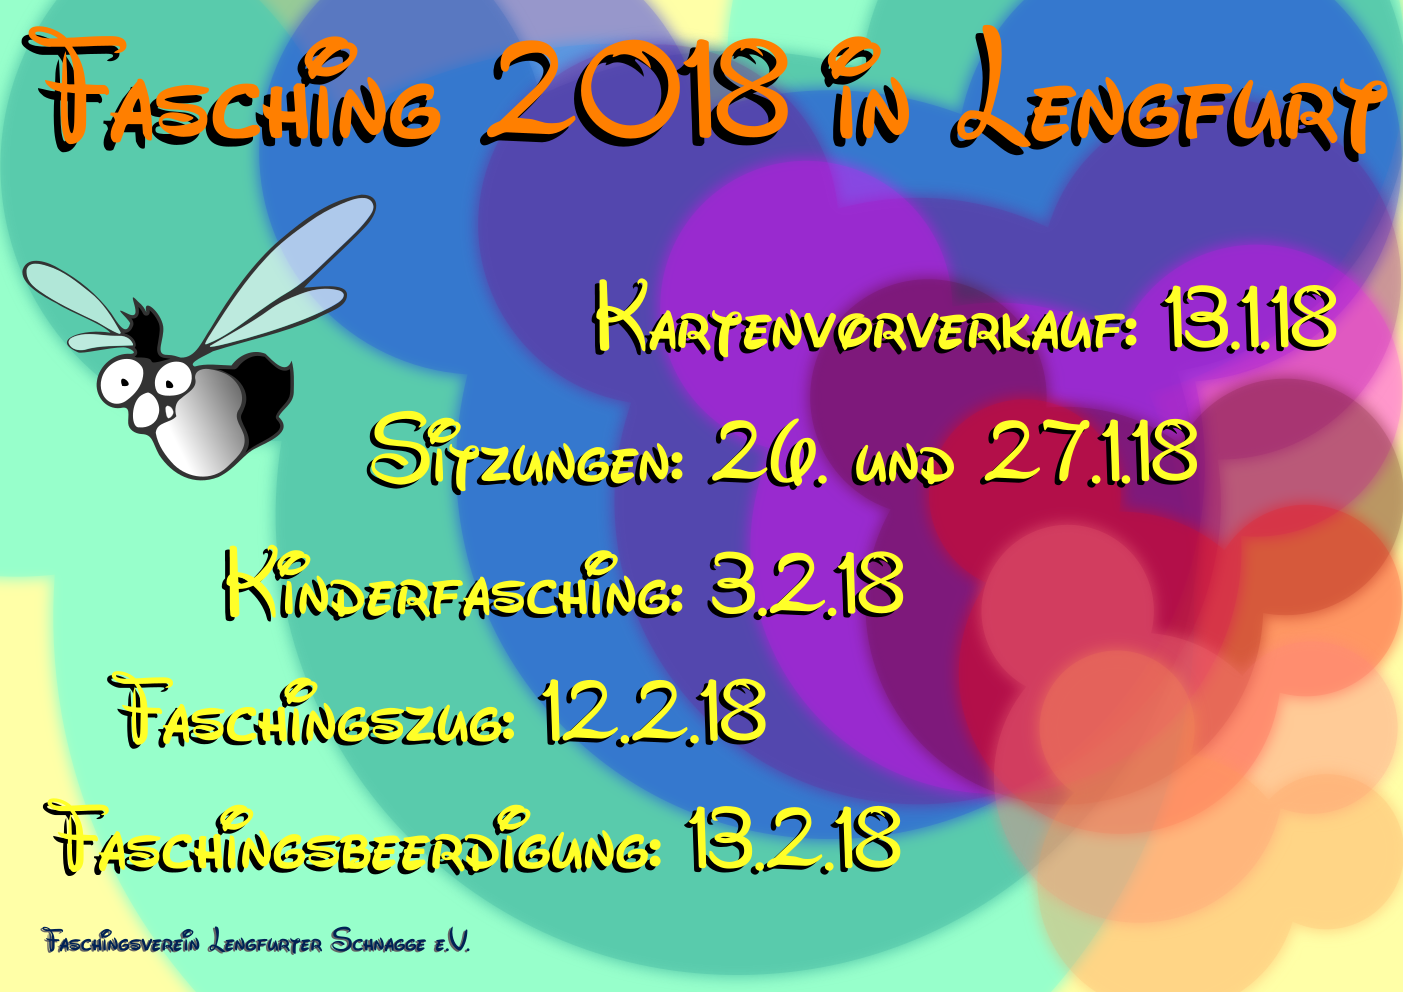 Schnagge Lengfurt Plakat 2017/18